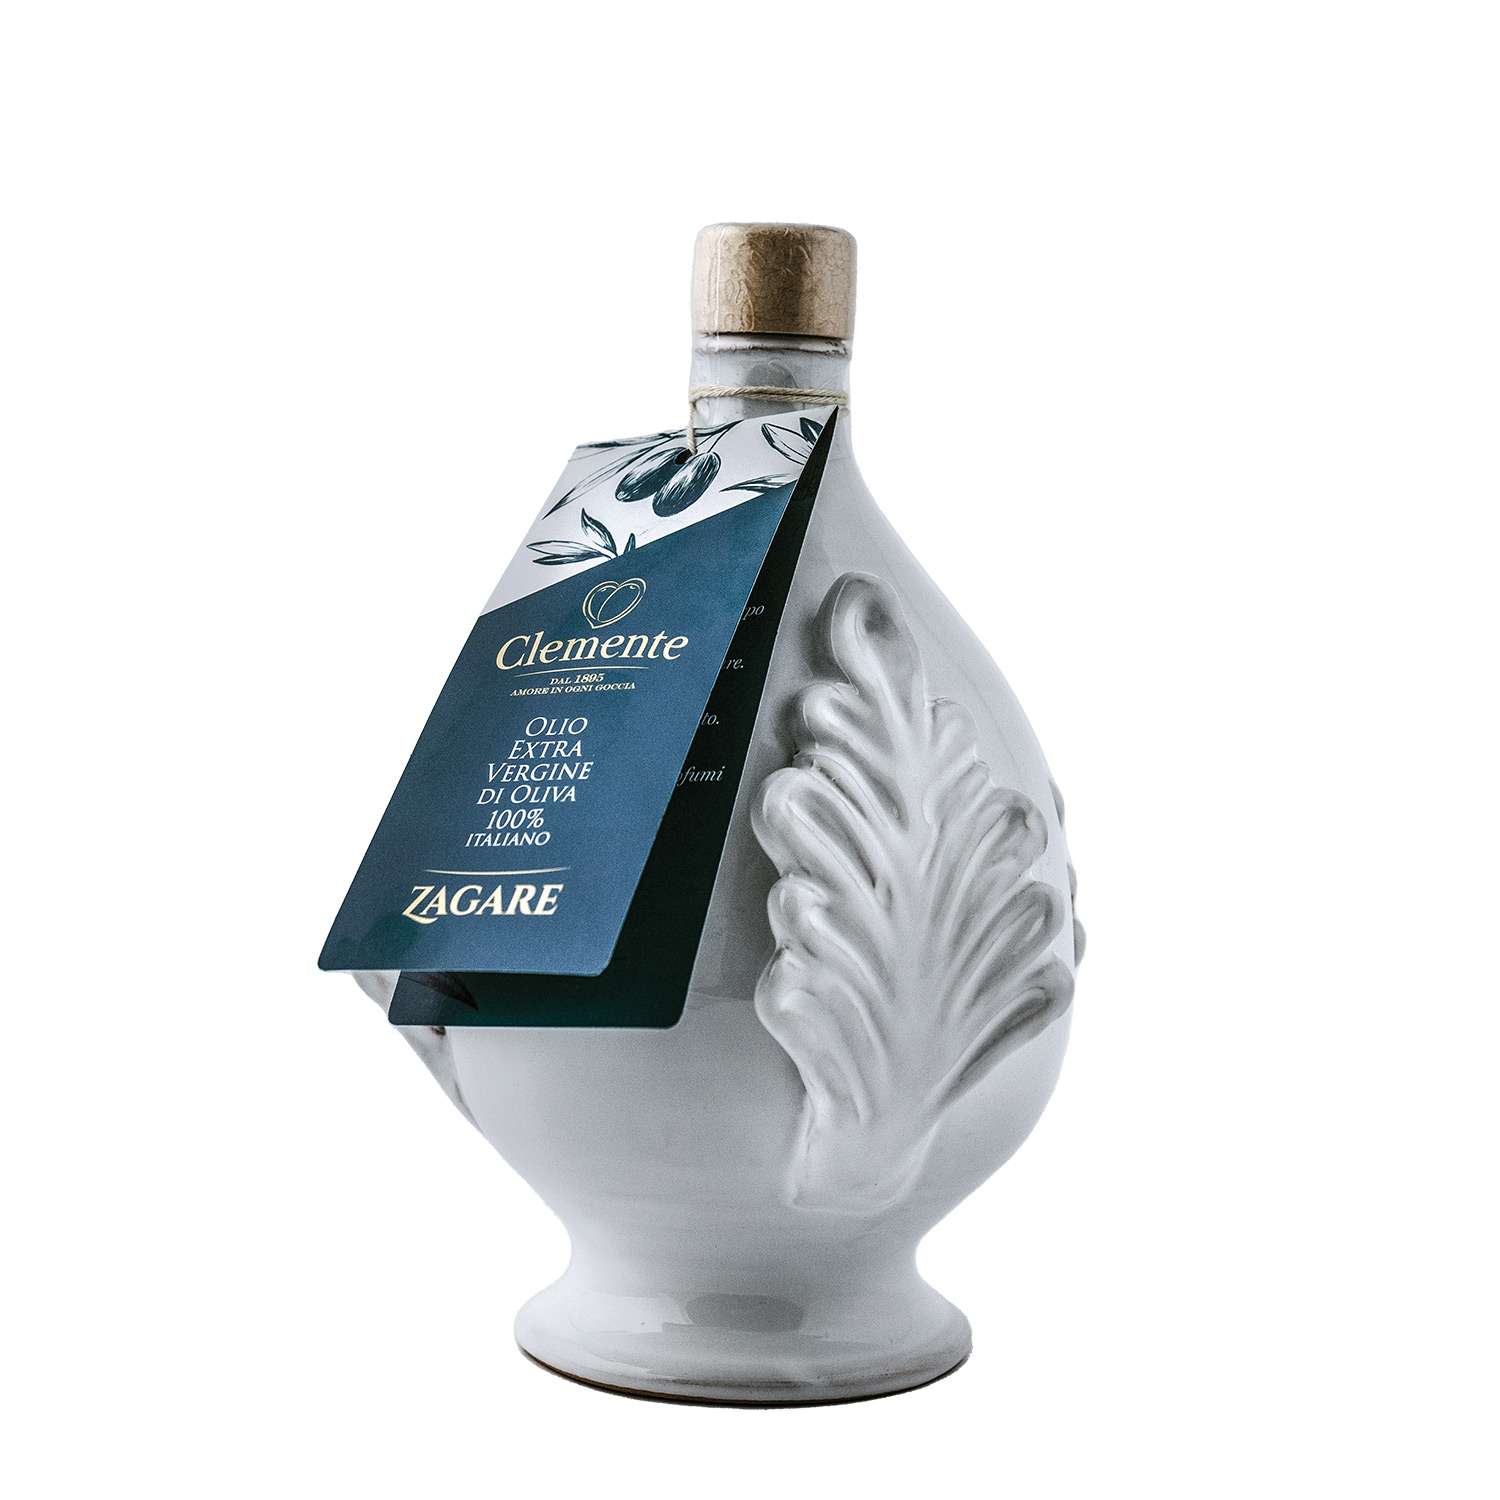 Pumo in Ceramica Le Zagare - 500 ml - Olio Clemente Shop Online